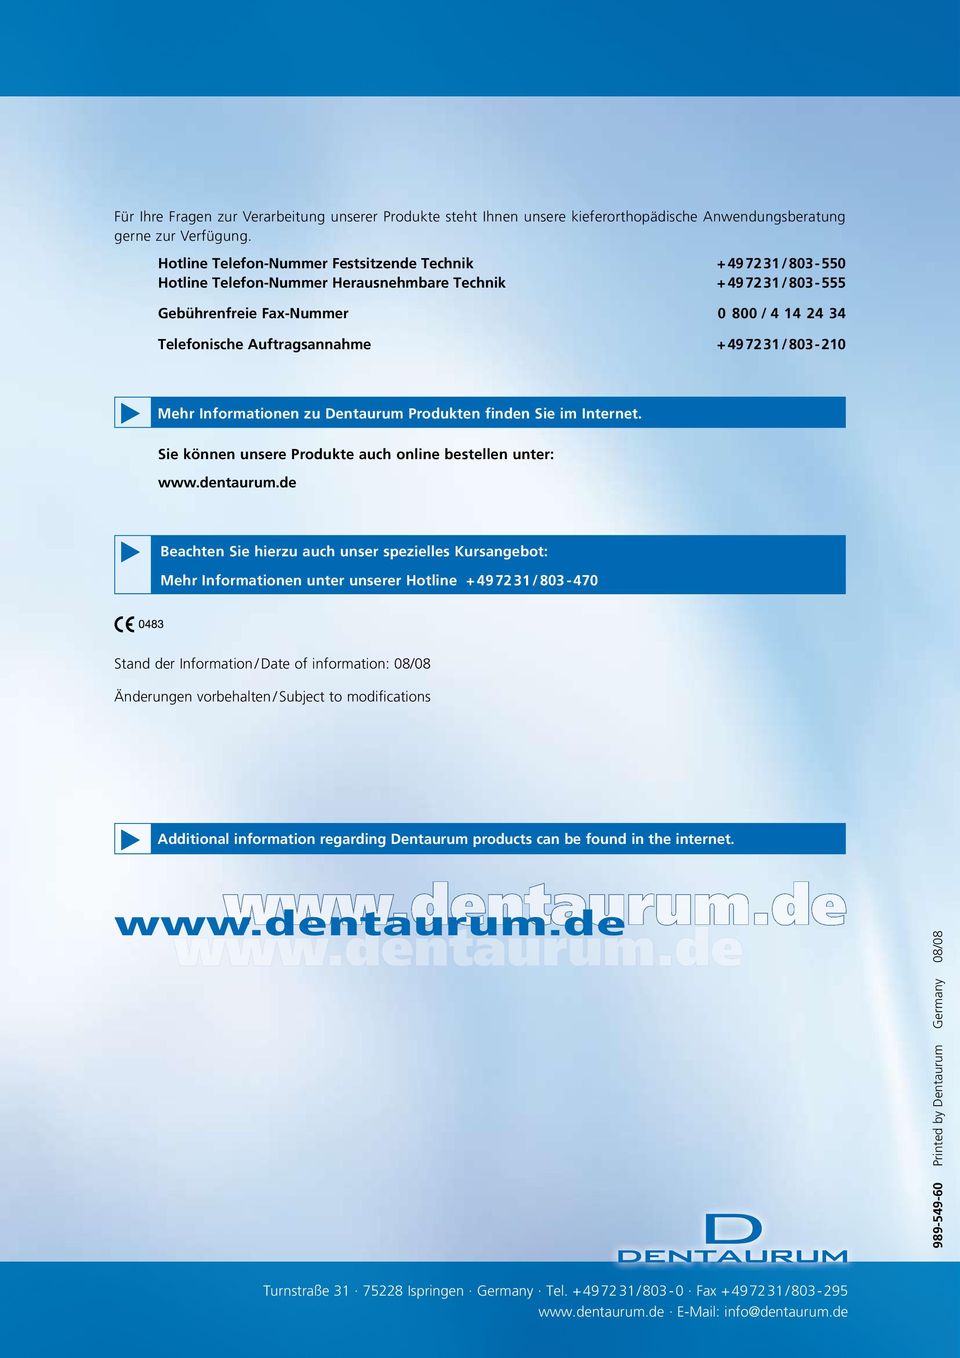 Auftragsannahme + 49 72 31 / 803-210 Mehr Informationen zu Dentaurum Produkten finden Sie im Internet. Sie können unsere Produkte auch online bestellen unter: www.dentaurum.